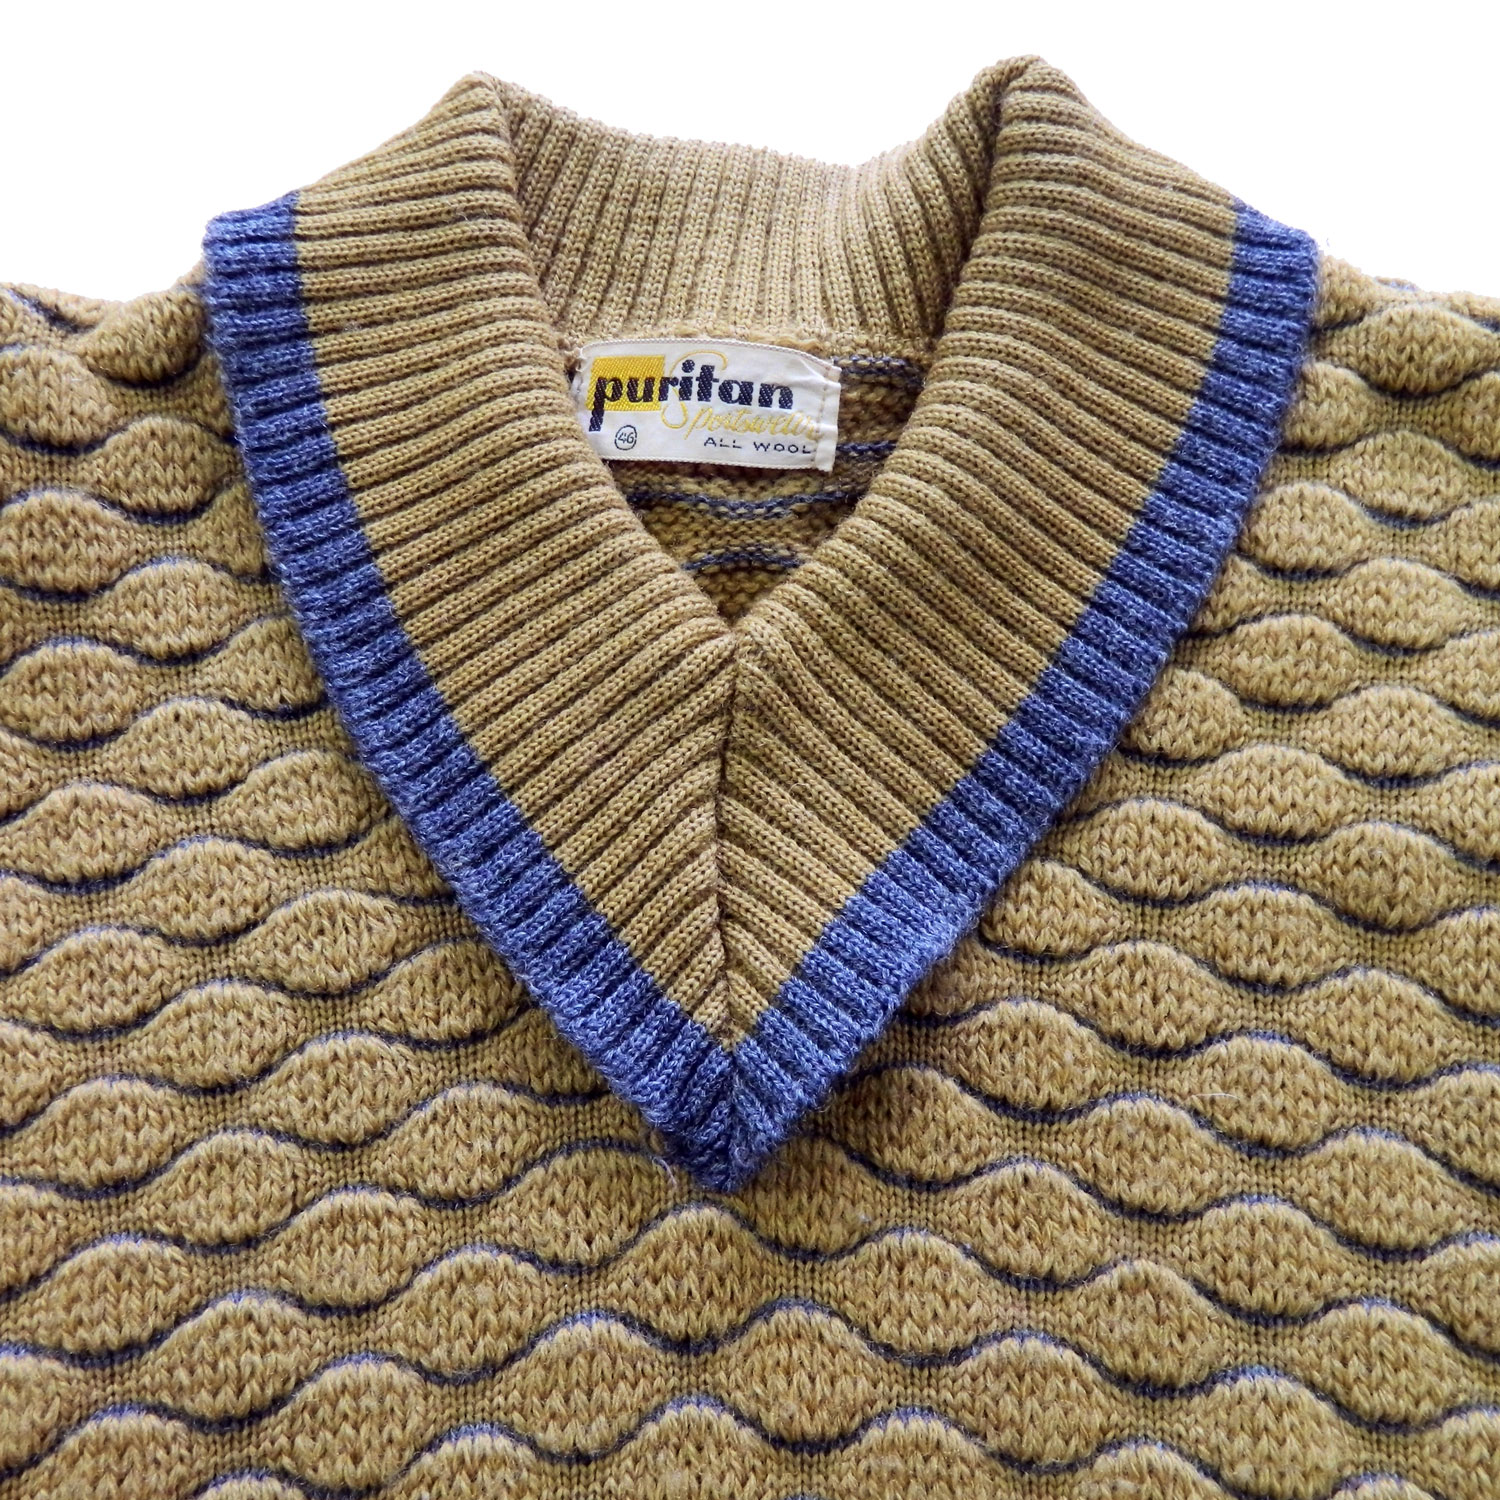 1960's V neck sweater